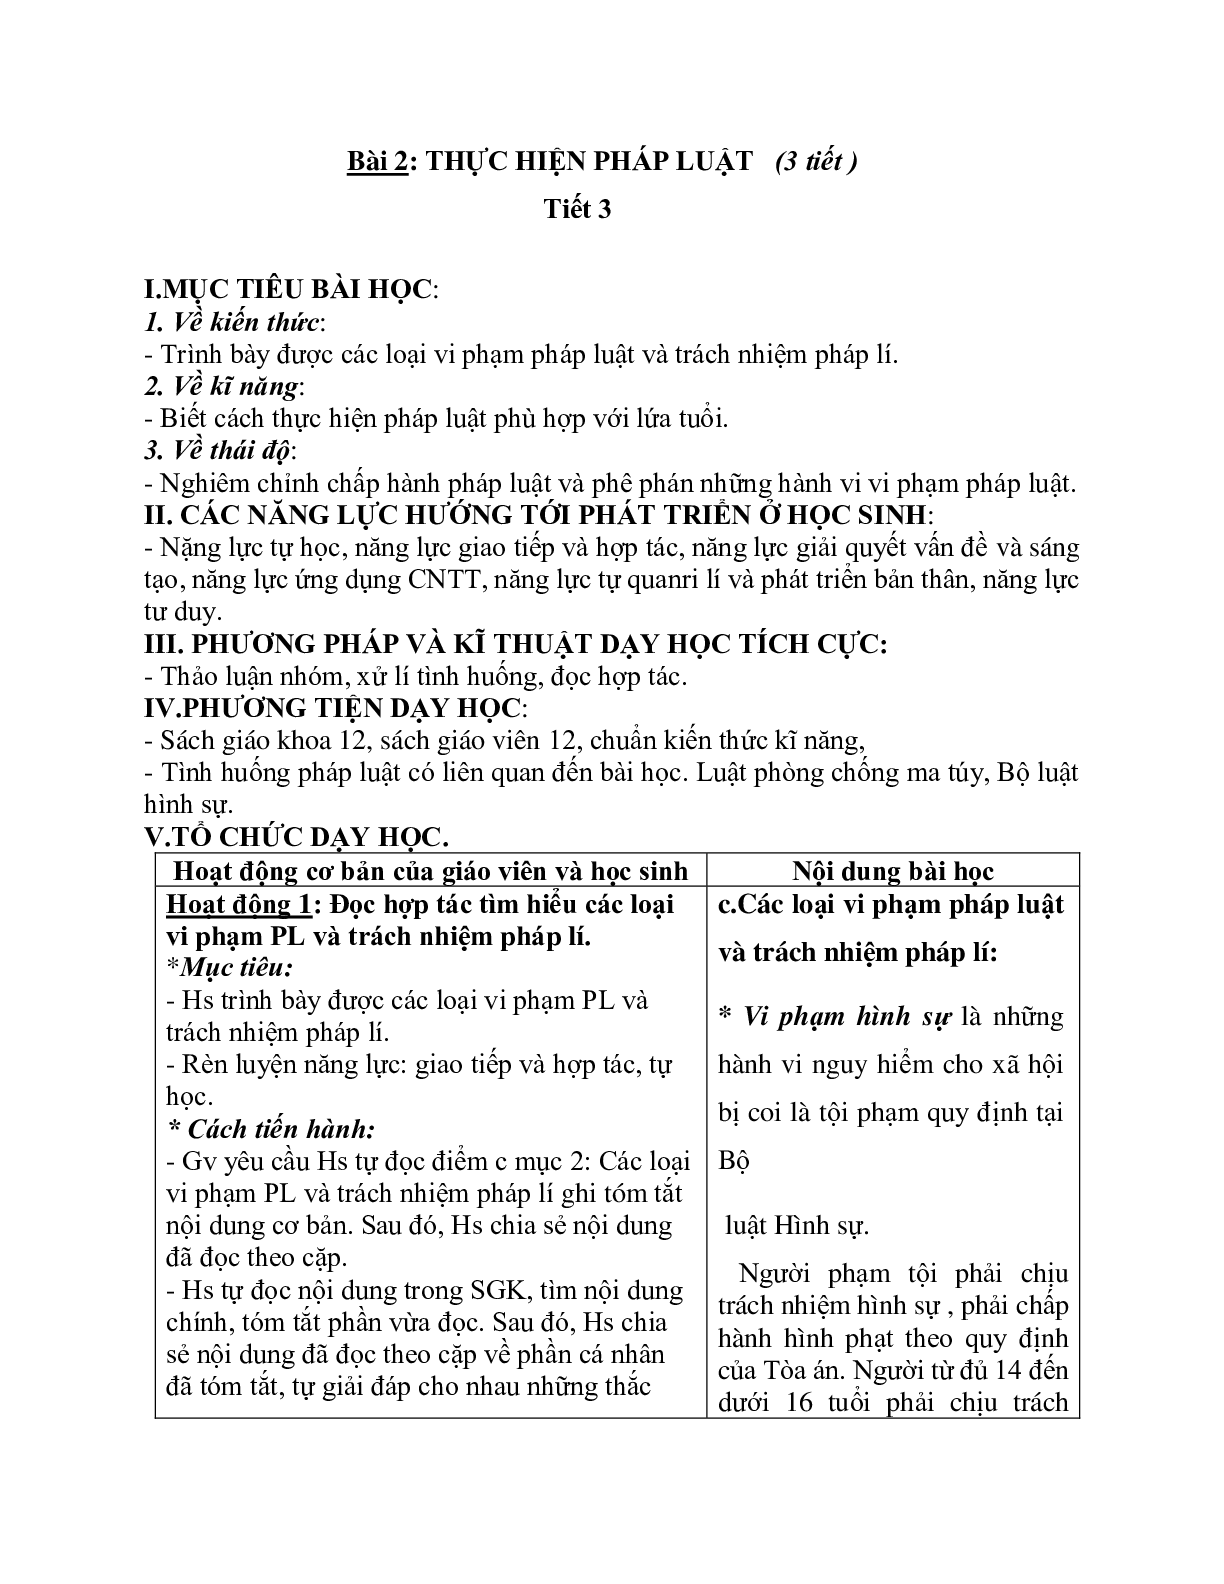 Giáo án GDCD 12 Bài 2 Thực hiện pháp luật tiết 3 mới nhất (trang 1)